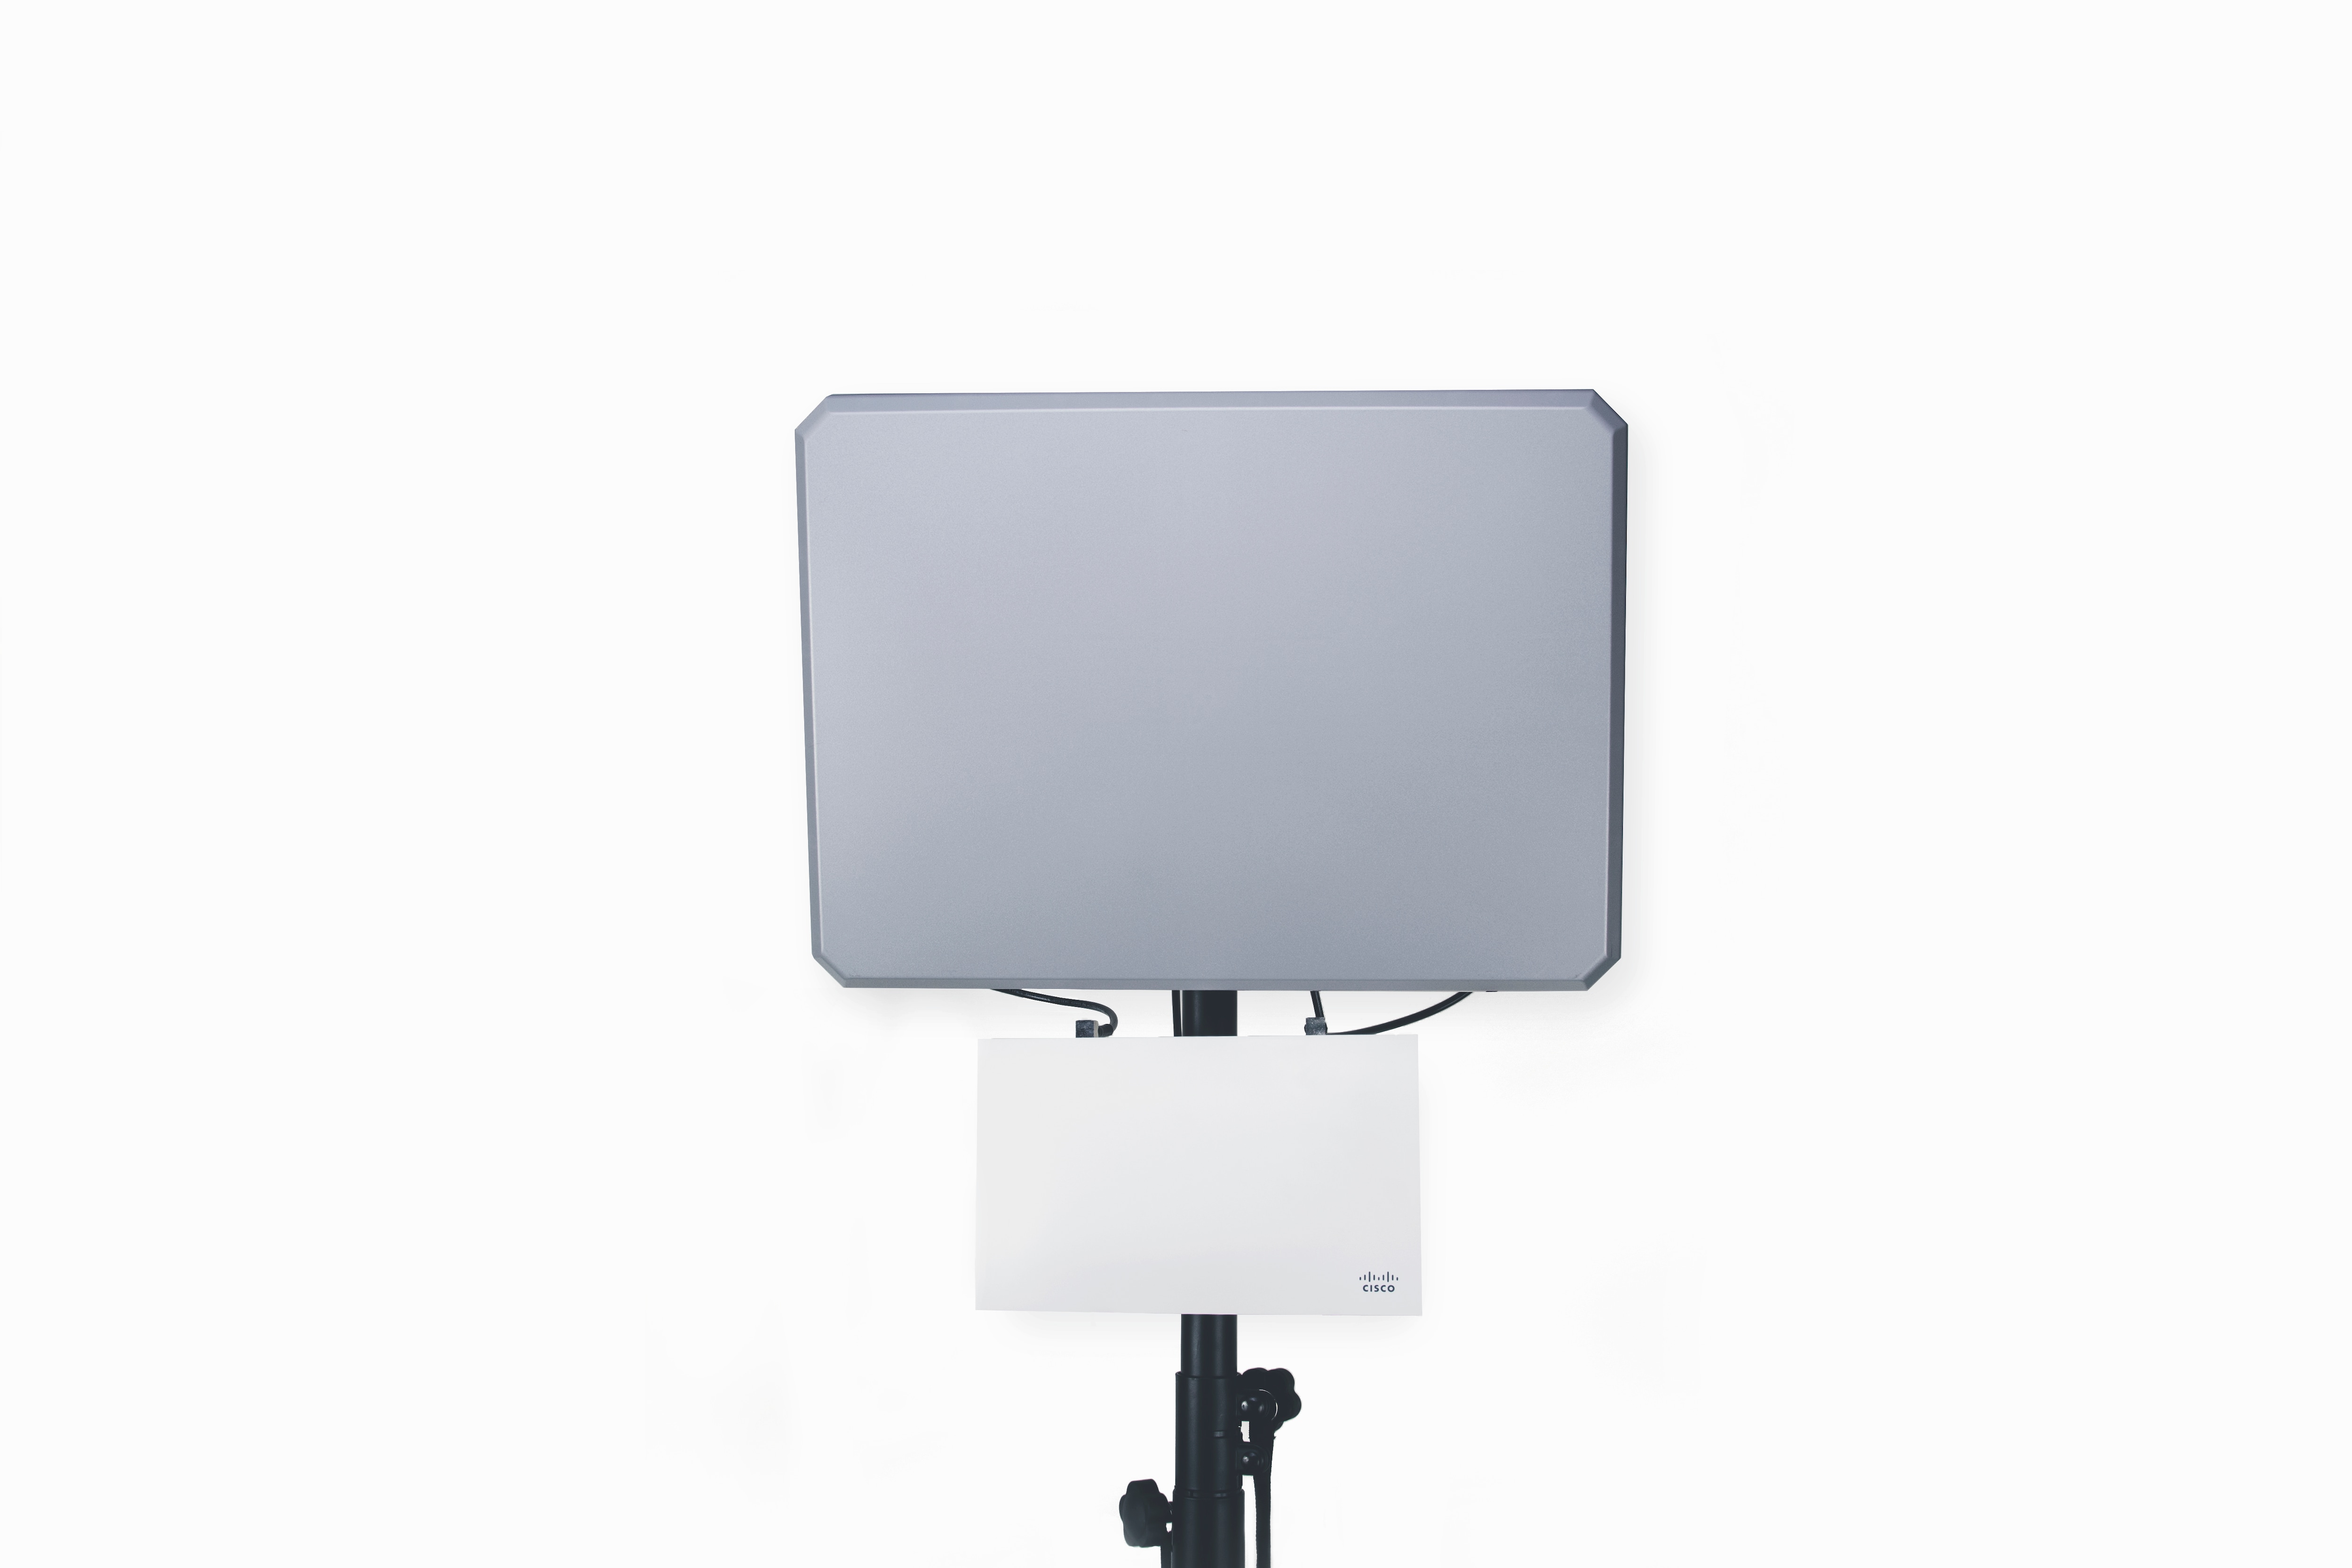 Cisco’s AIR-ANT2513P4M-N= antenna